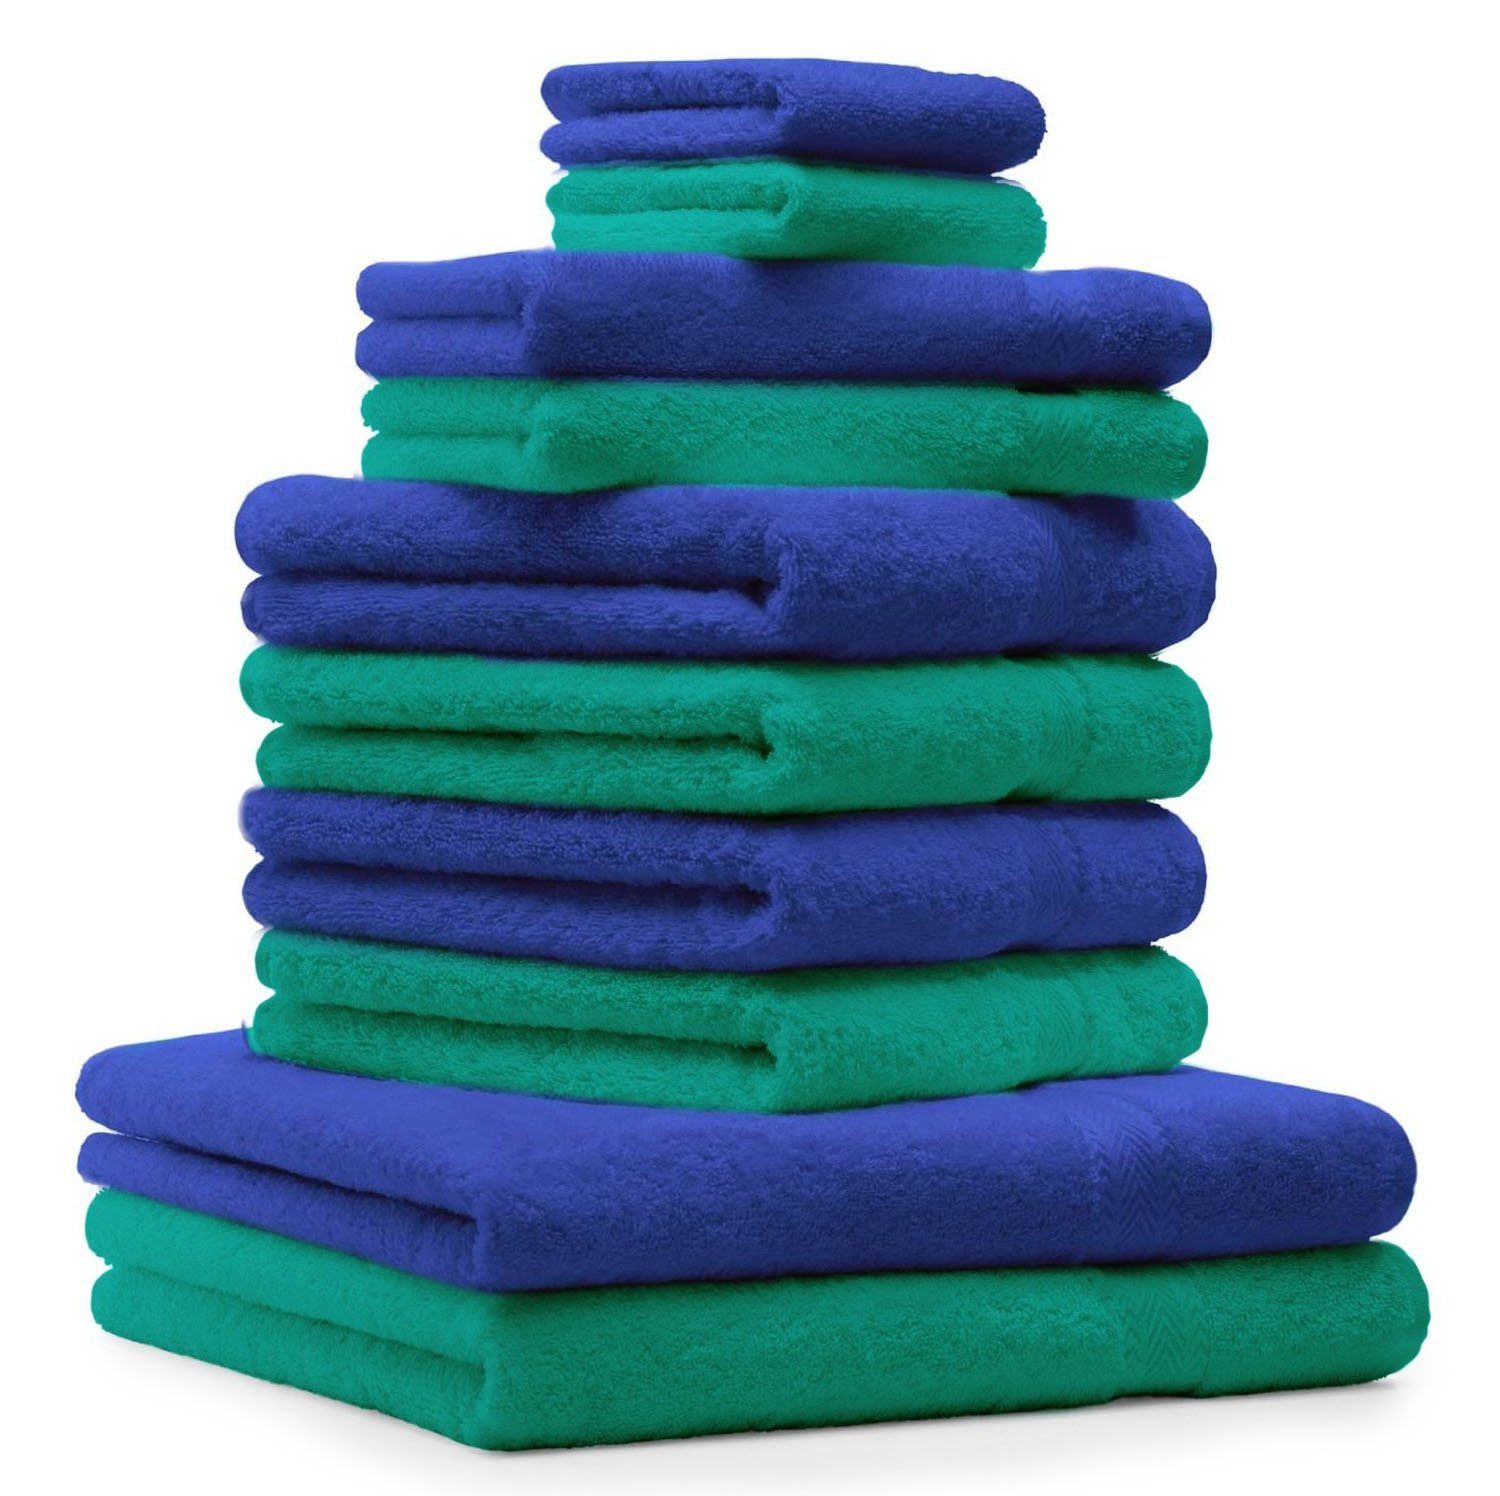 Betz Handtuch Set 10-TLG. Handtuch-Set Classic Farbe smaragdgrün und royalblau, 100% Baumwolle